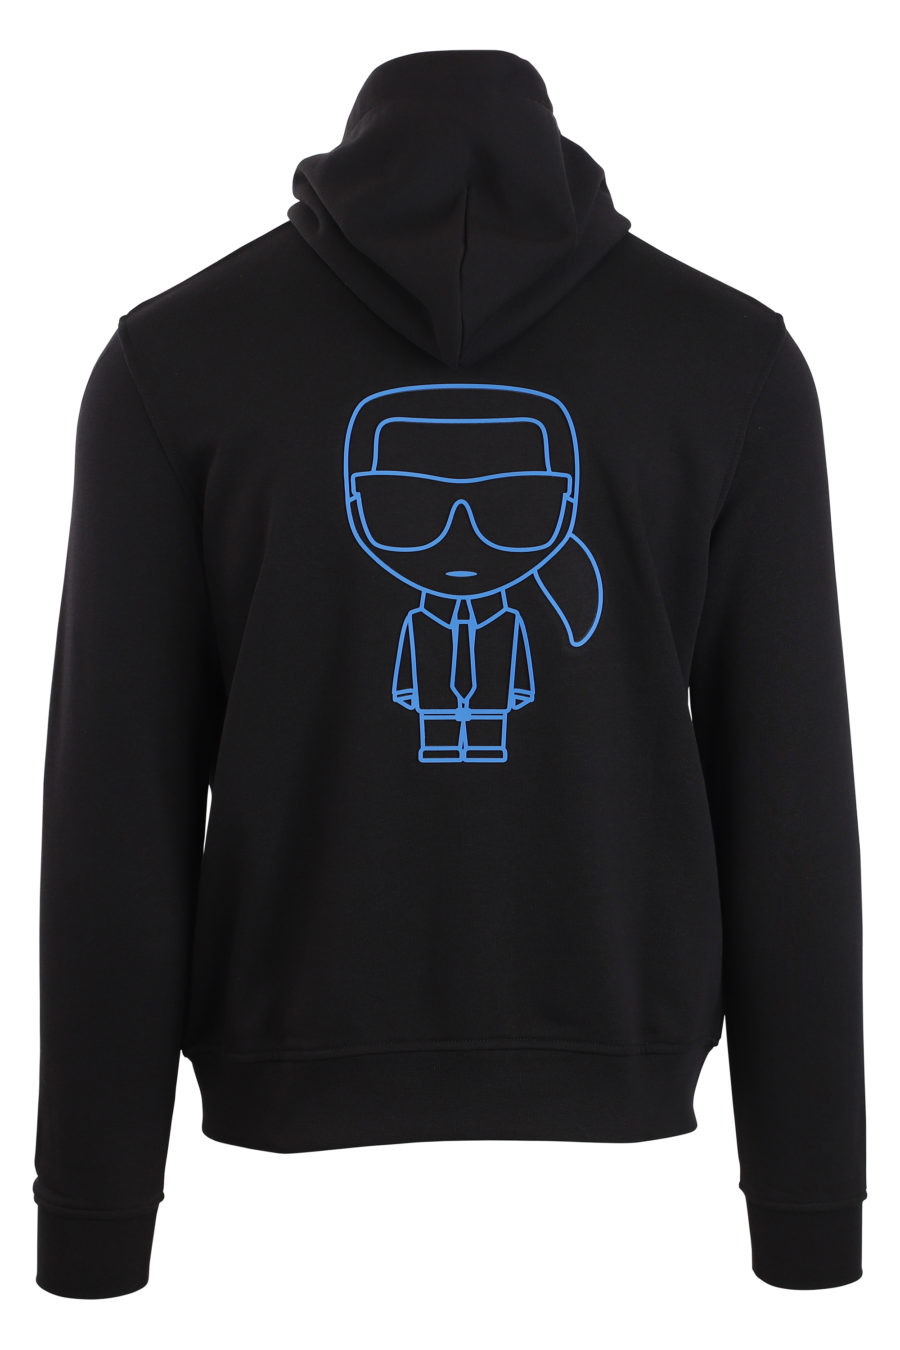 Schwarzes Sweatshirt mit Kapuze und blauem Logo - IMG 0915